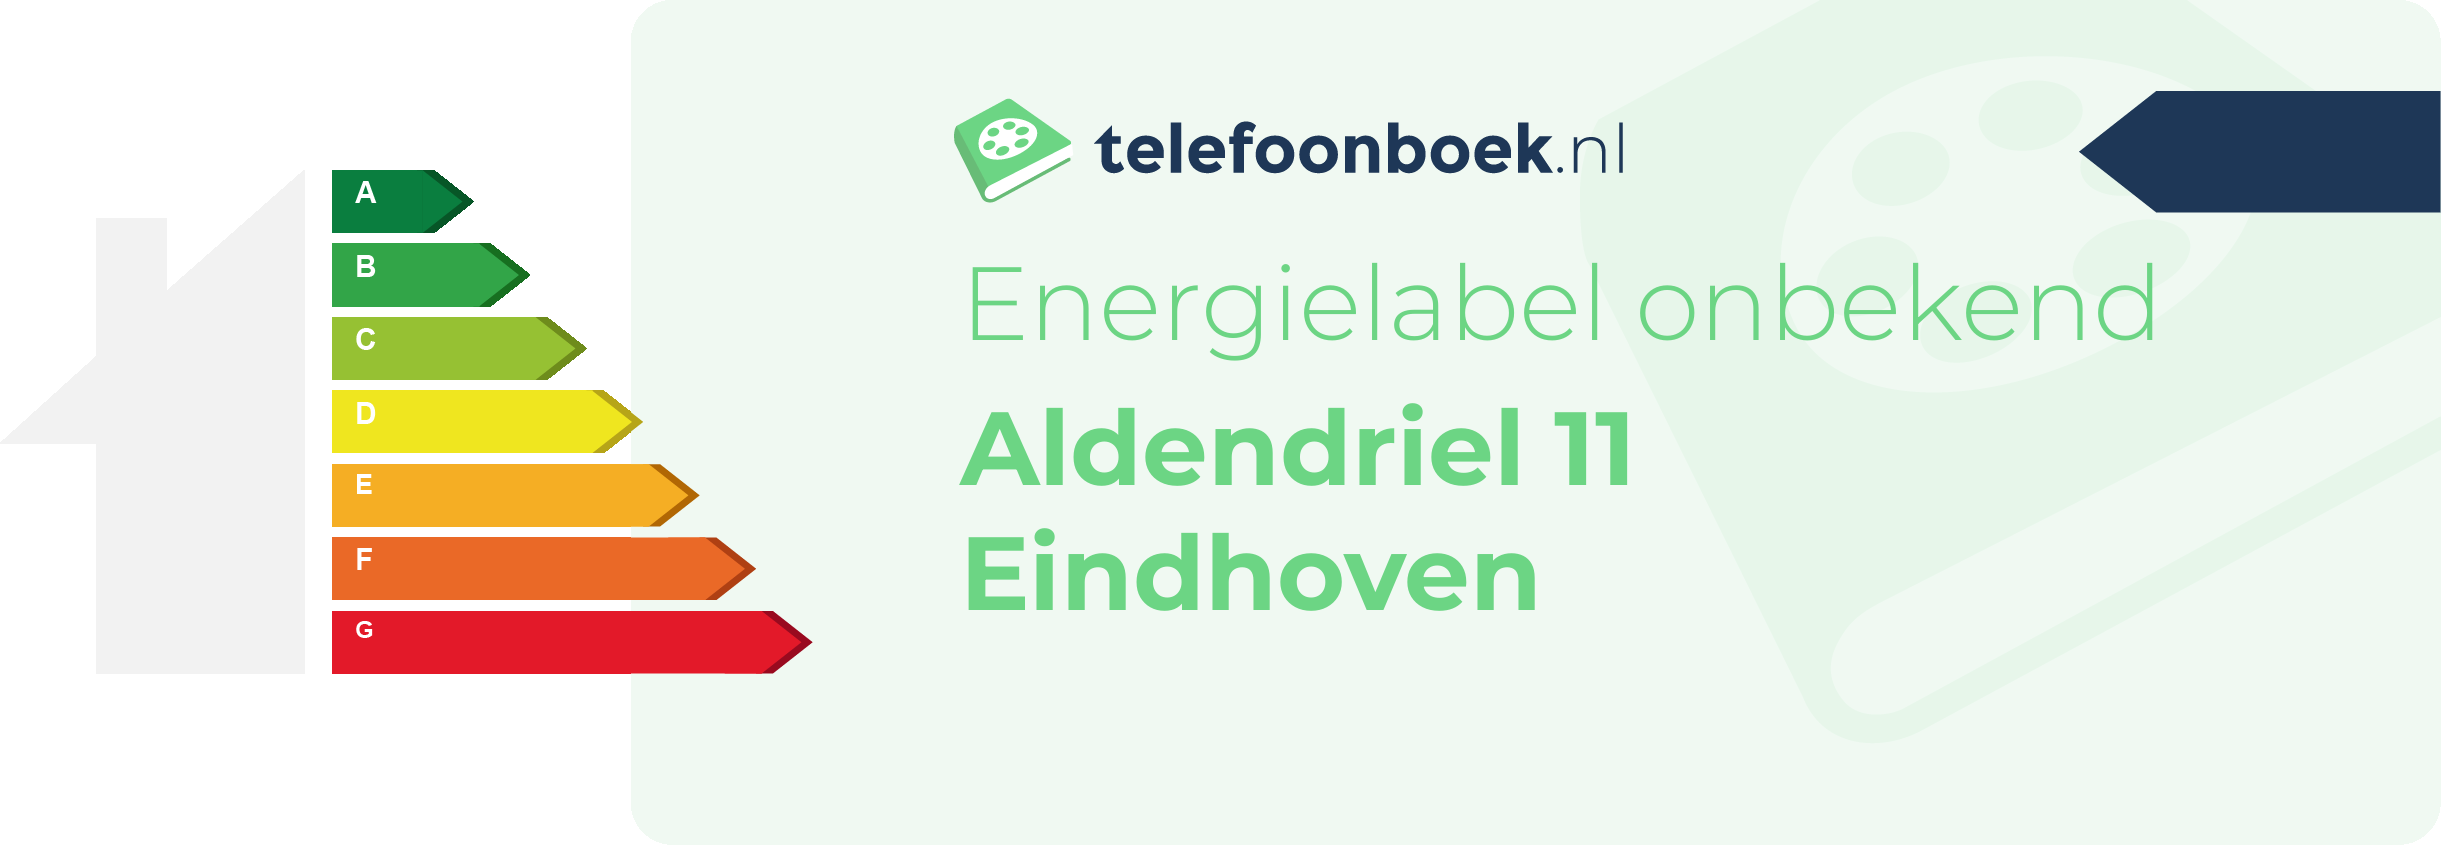 Energielabel Aldendriel 11 Eindhoven